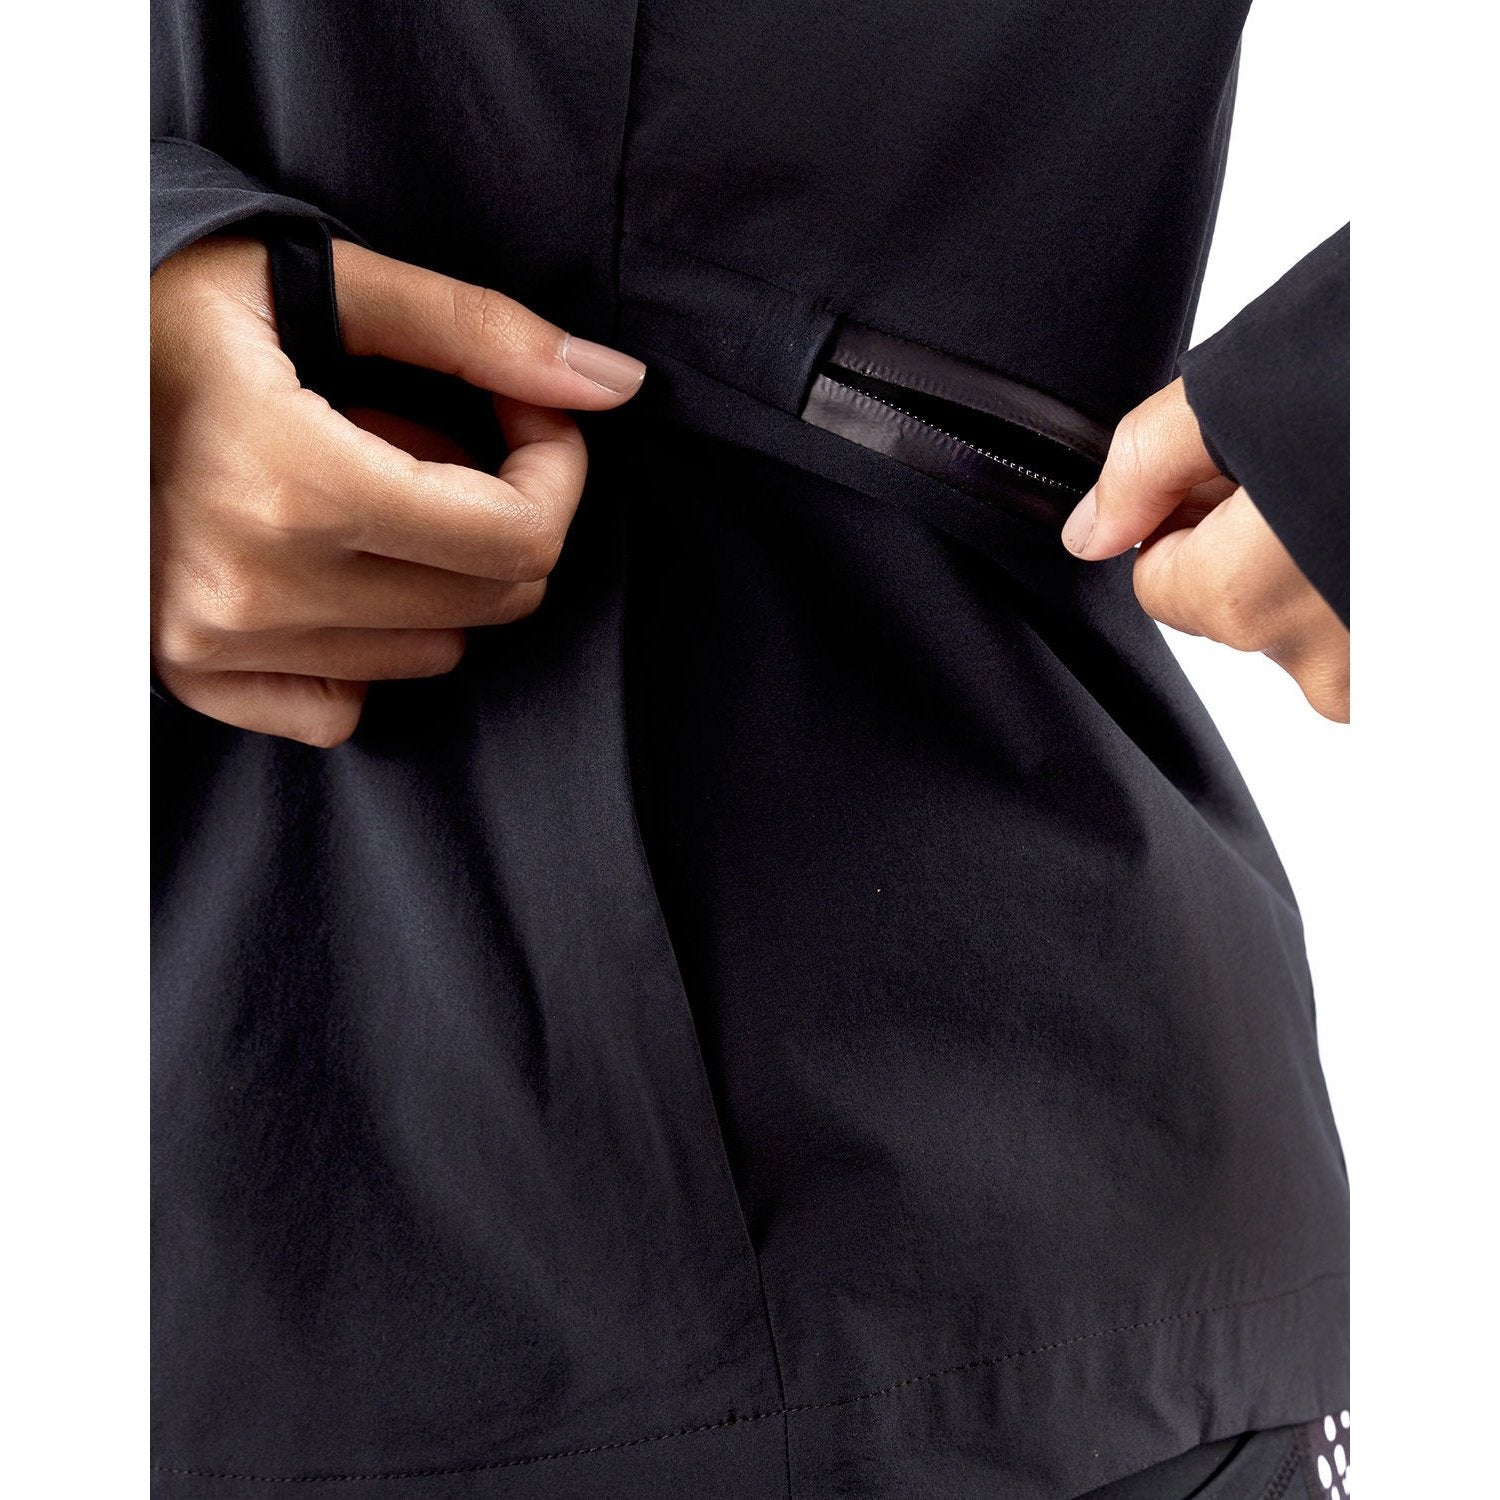 Atum women's basic jacket